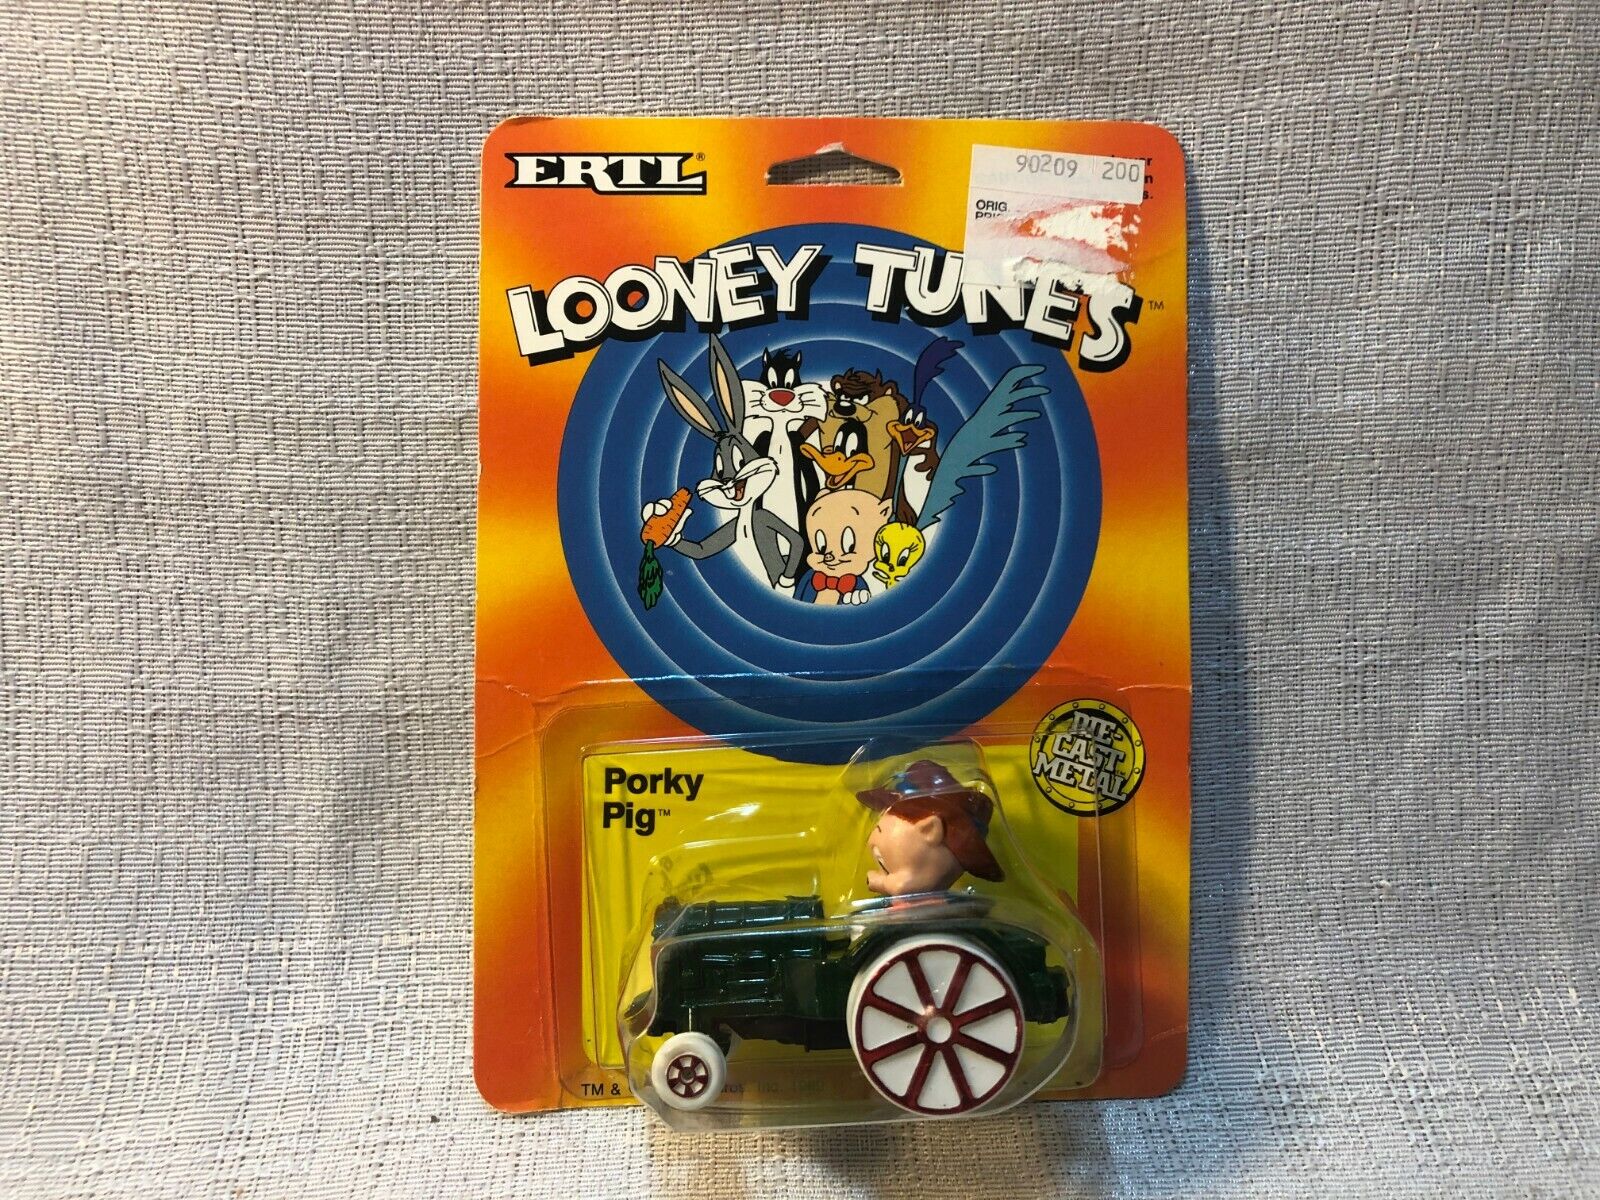 ERTL Warner Bros WB Looney Tunes Porky Pig Vintage Die Cast Metal Toy Car 